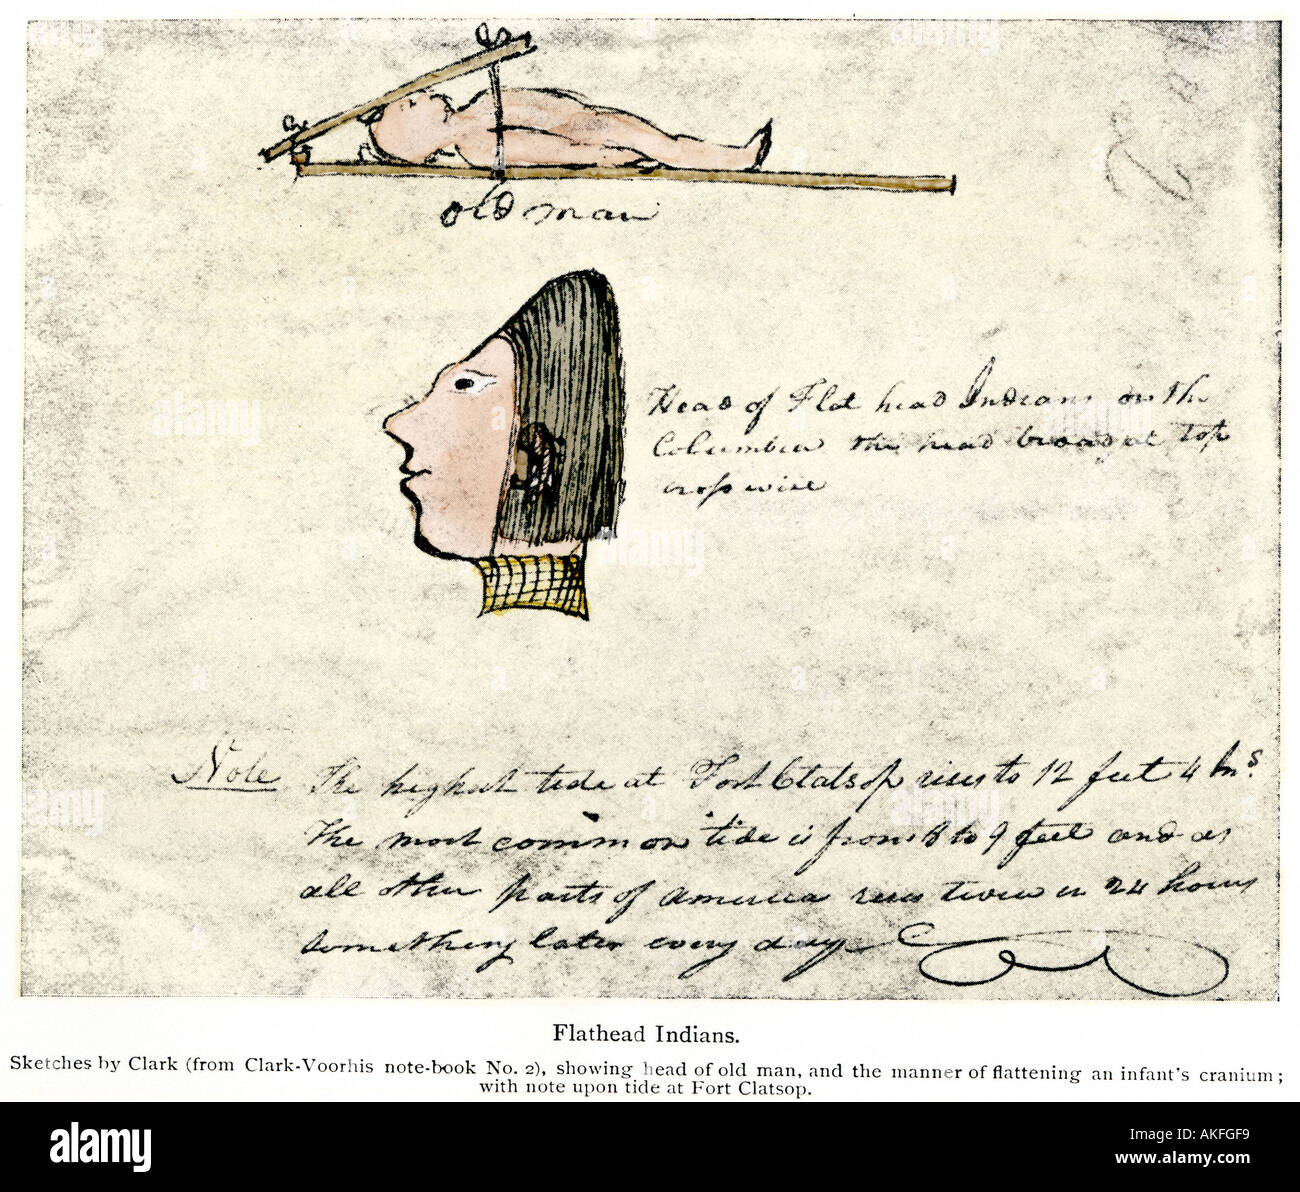 William Clark boceto de Flathead de indios en su diario de la expedición de Lewis y Clark 1804-1806. Mano de semitono de color Foto de stock